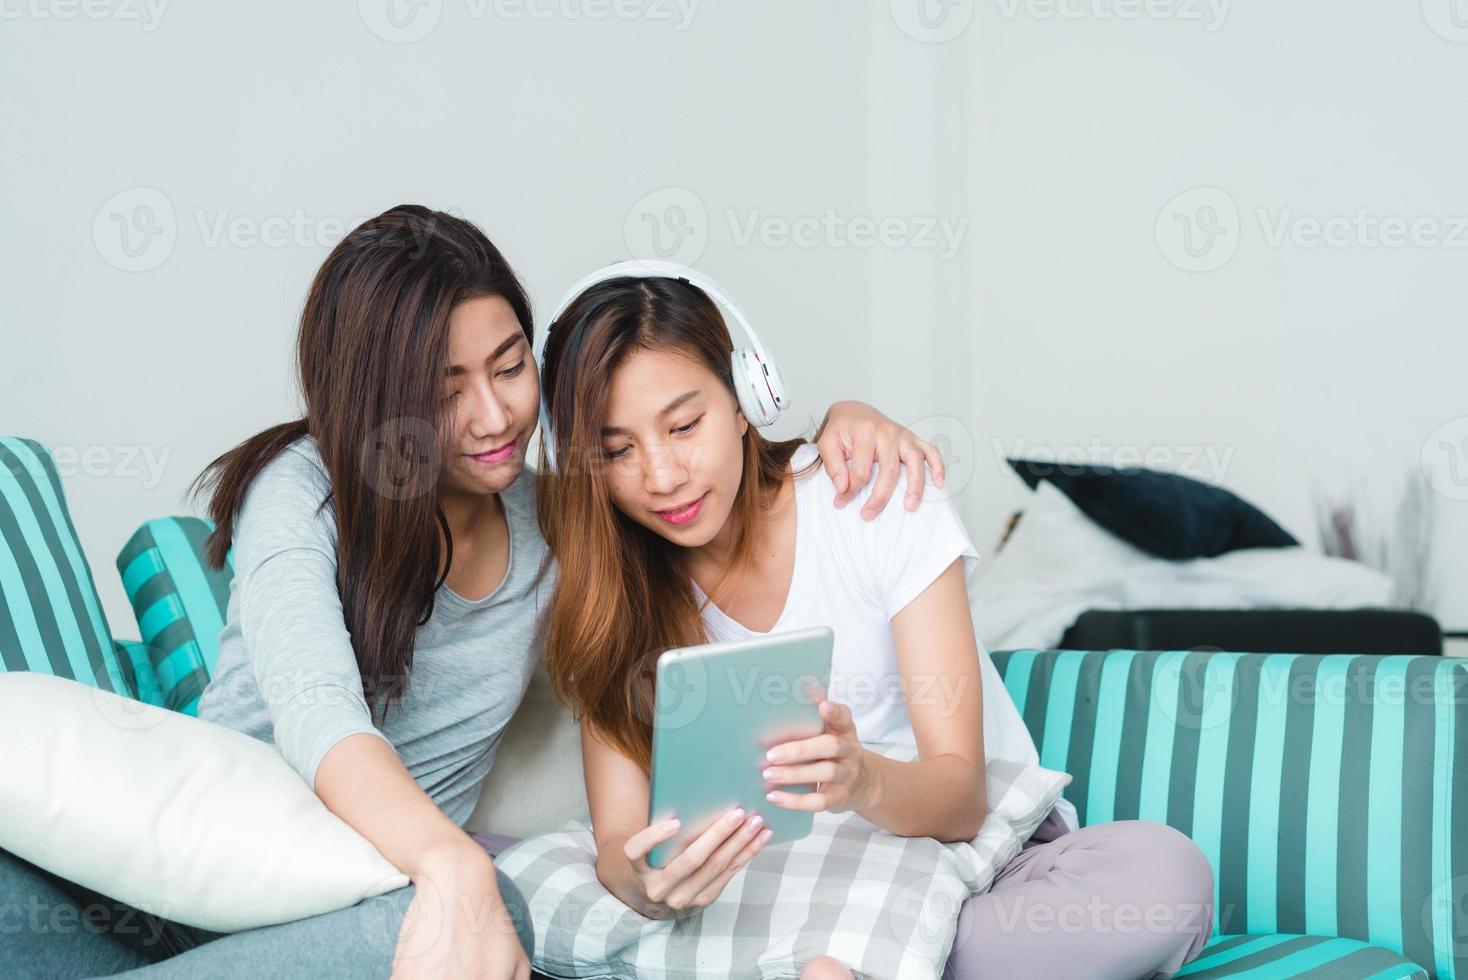 mooie jonge aziatische vrouwen lgbt lesbische gelukkige paar zittend op de bank online kopen met behulp van tablet in de woonkamer thuis. LGBT lesbisch koppel samen binnenshuis concept. leuke tijd thuis doorbrengen. foto